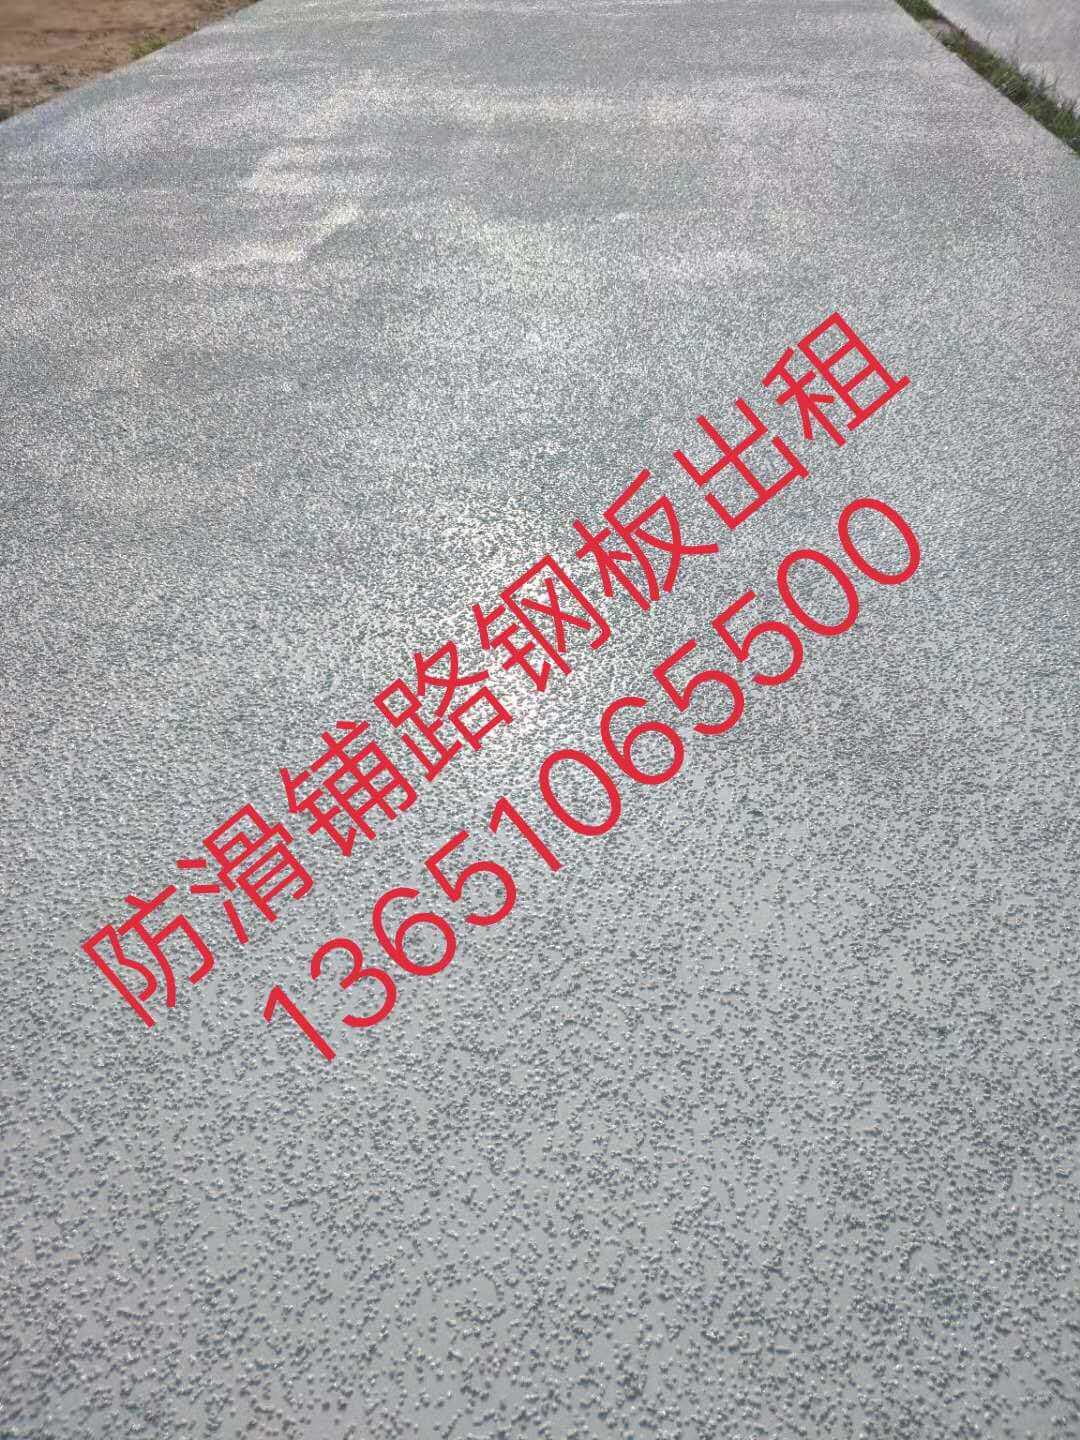 北京钢板租赁-北京钢板出租-铺路钢板出租-防滑钢板出租